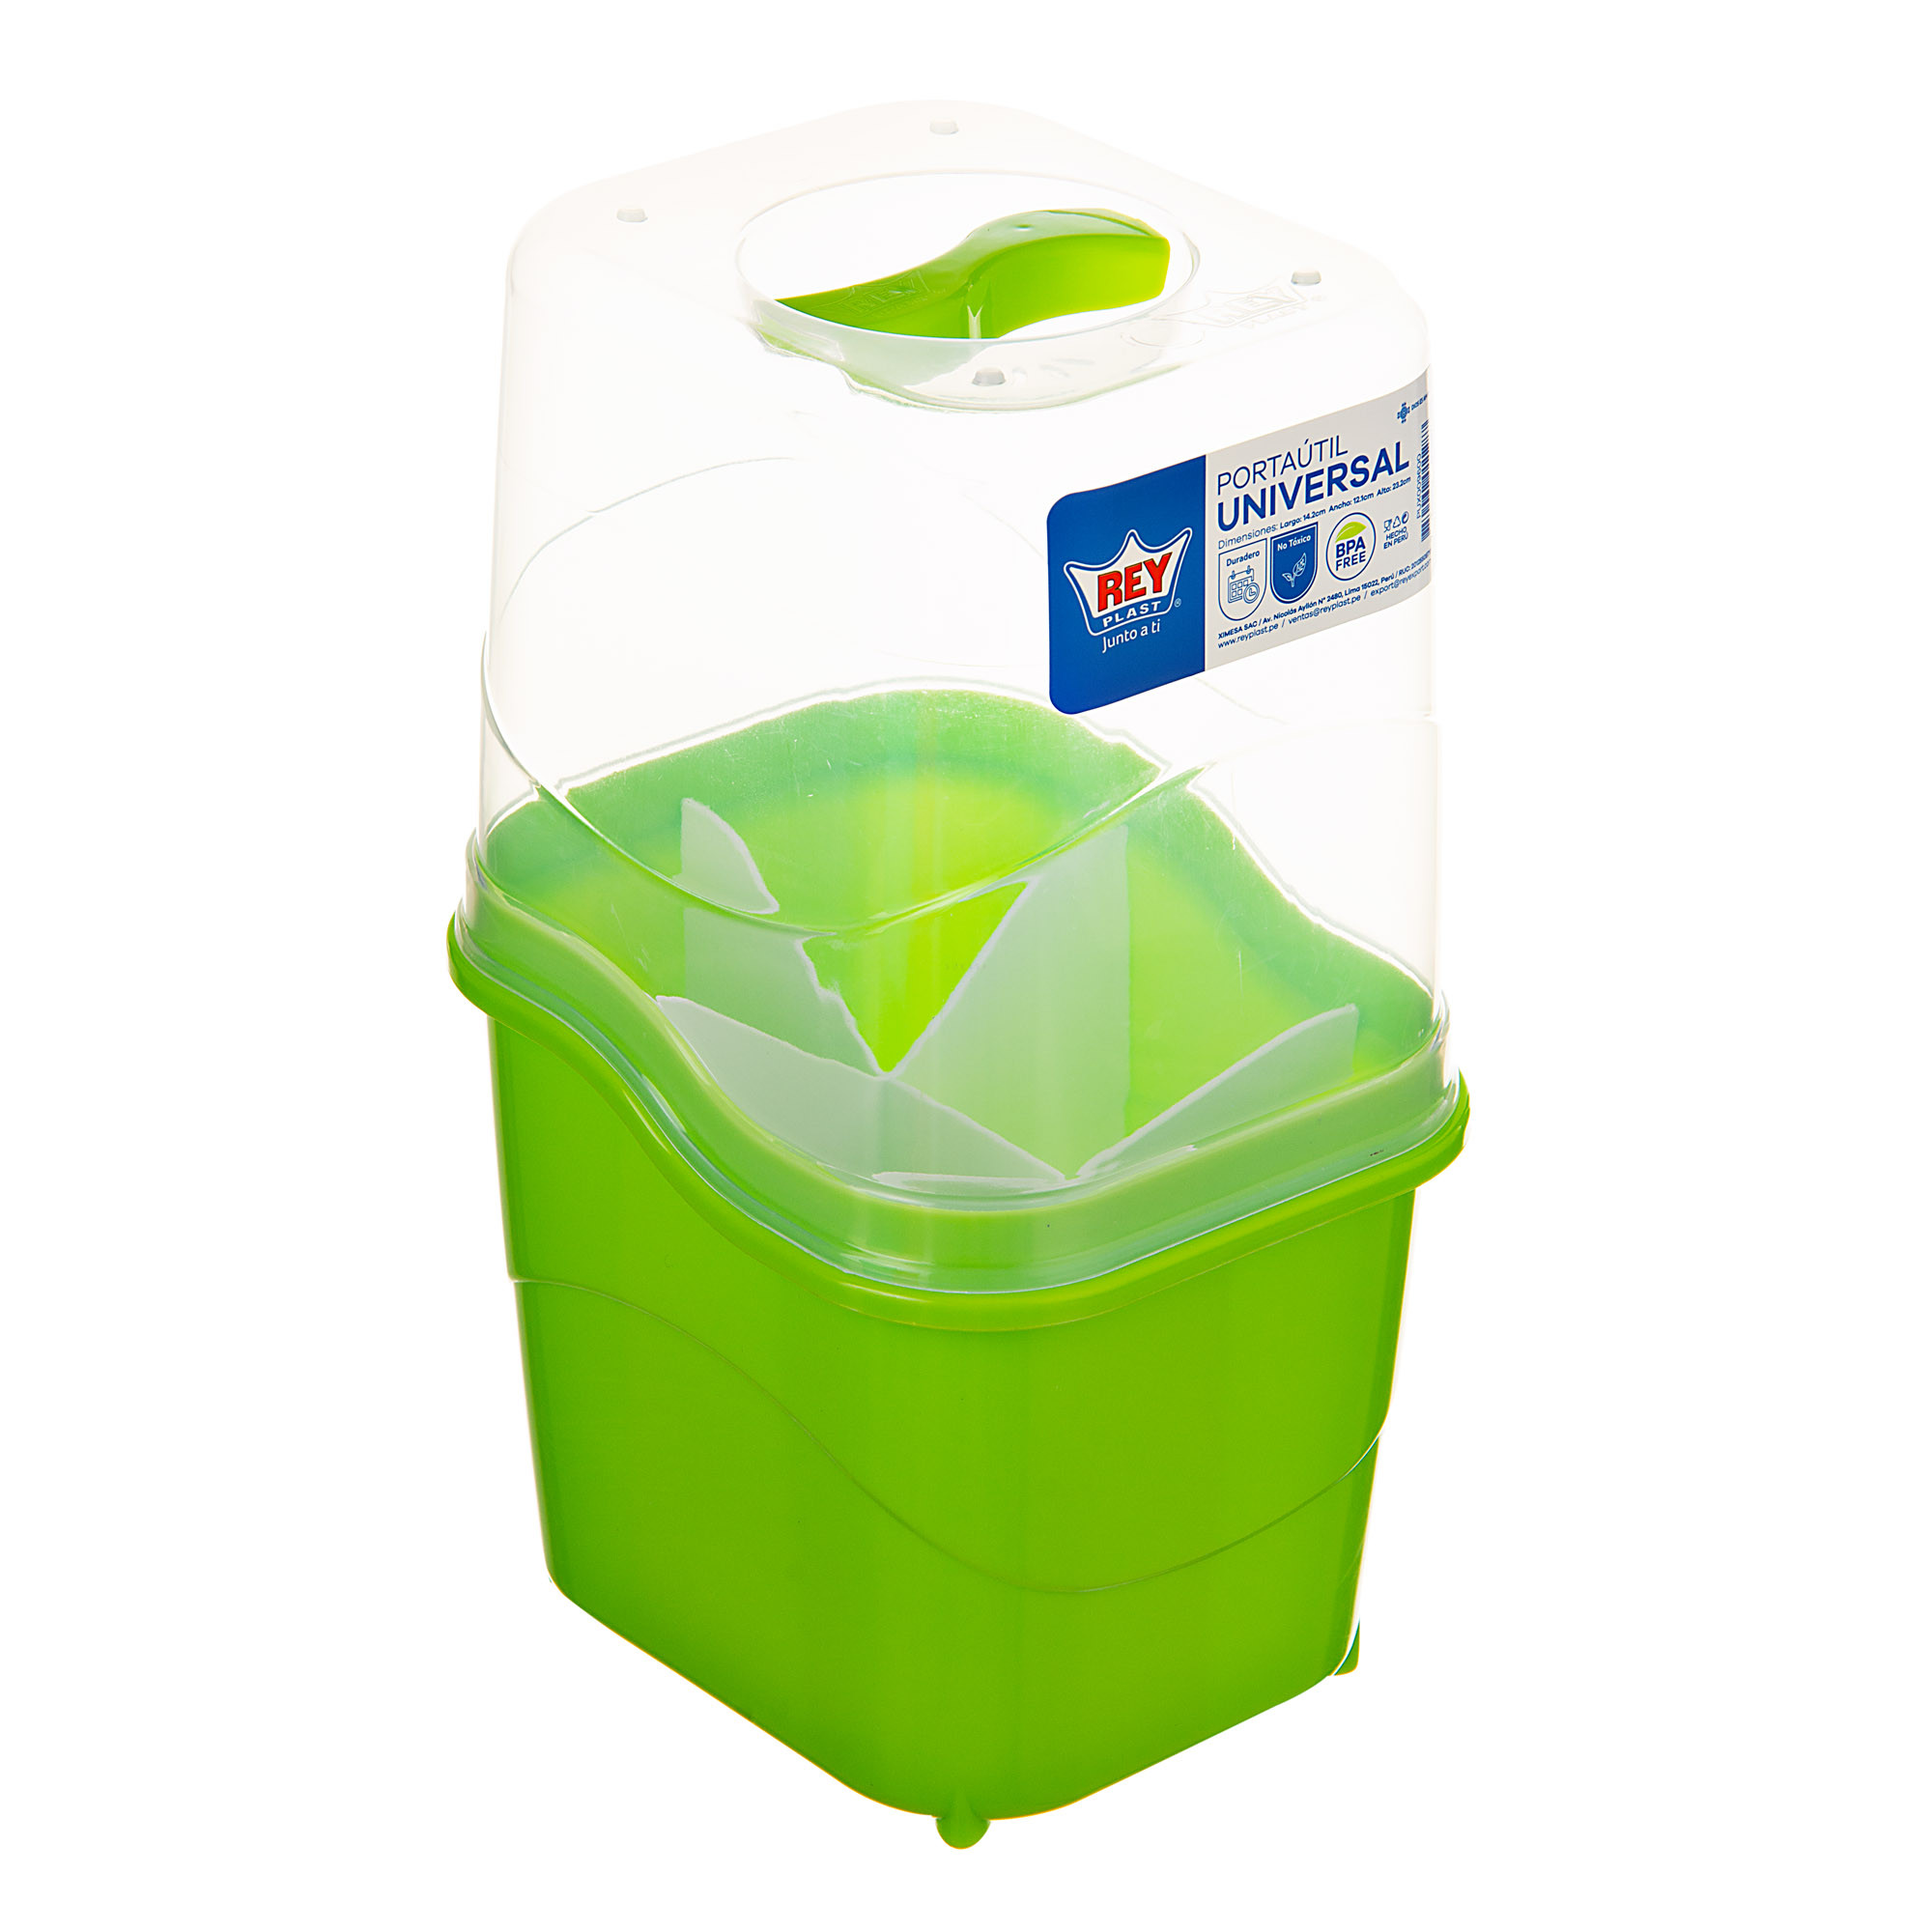 Porta cubiertos reutilizable · Funda para cubiertos ecológica